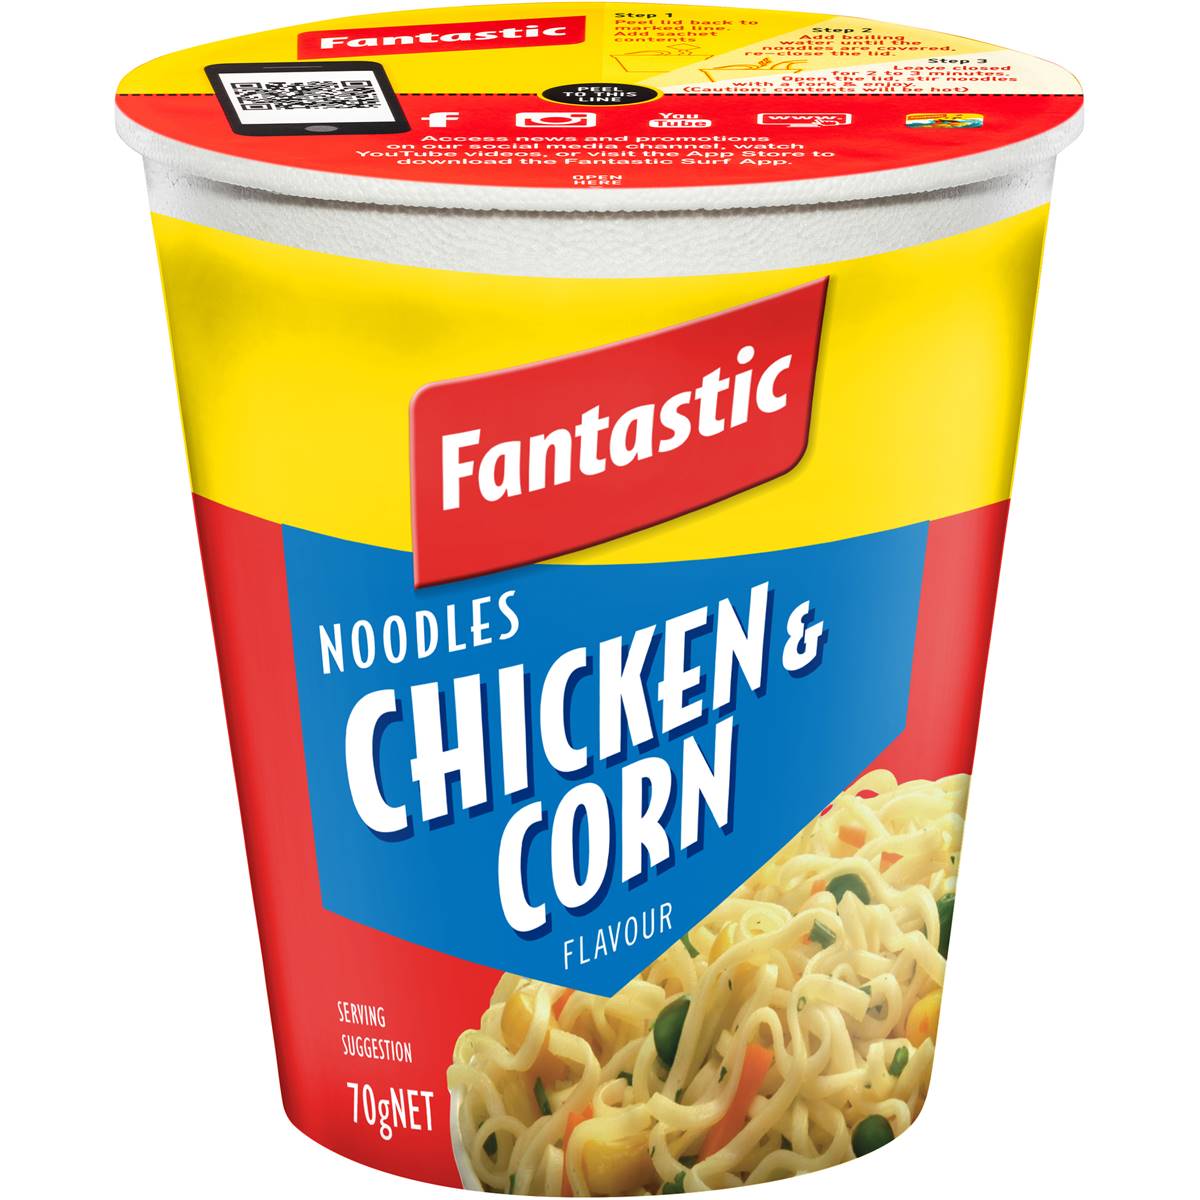 Fantastic Chicken & Corn Noodle Cup